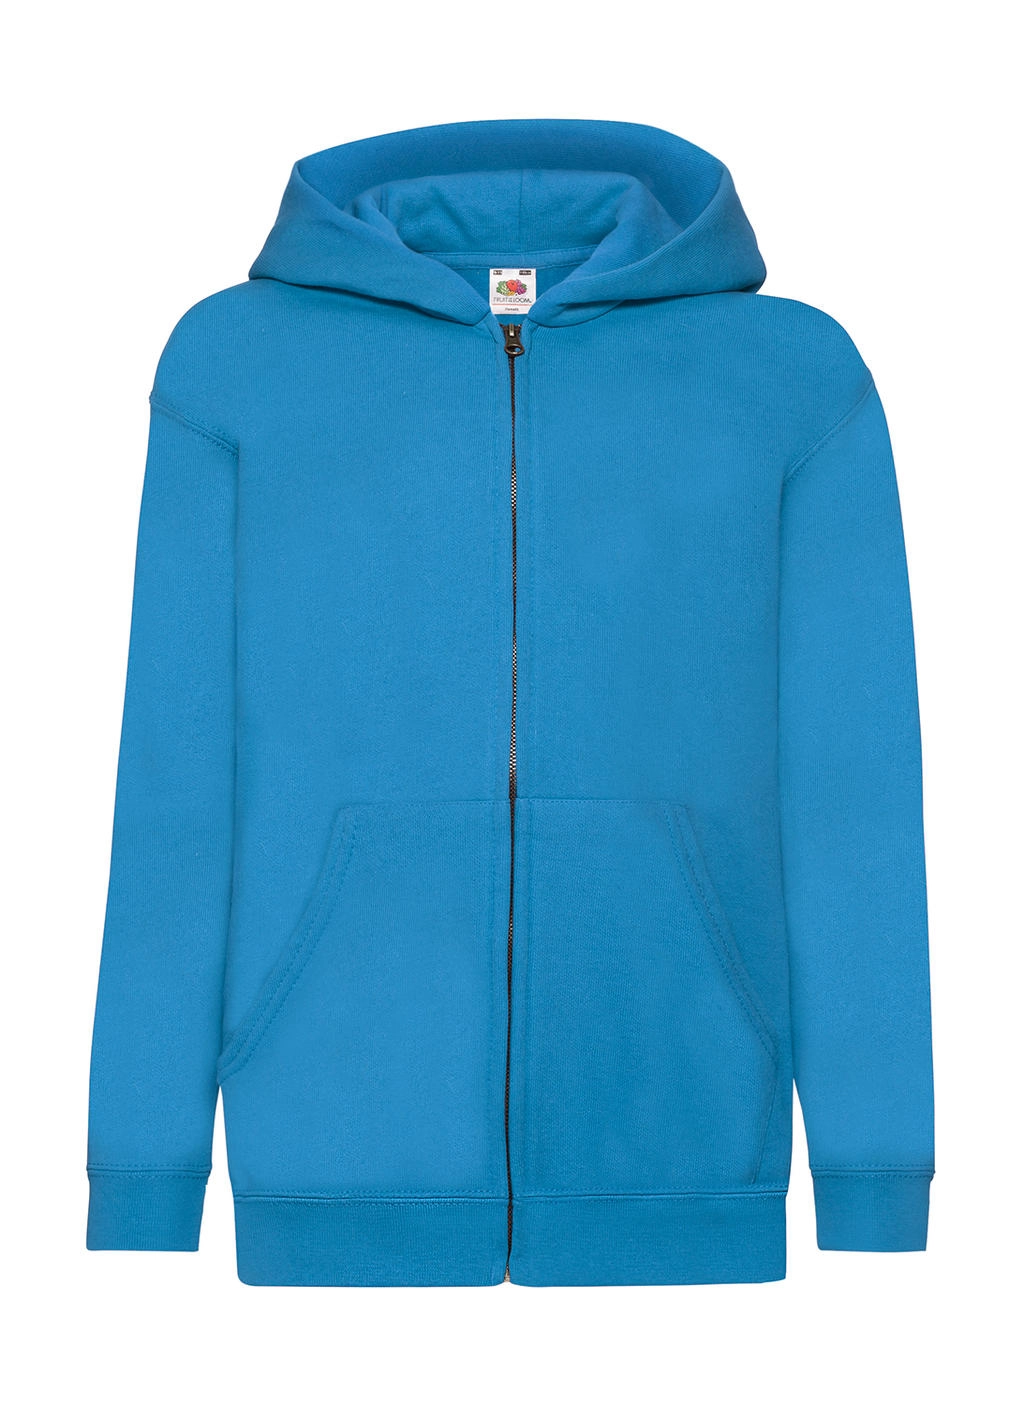 Kids` Classic Hooded Sweat Jacket zum Besticken und Bedrucken in der Farbe Azure Blue mit Ihren Logo, Schriftzug oder Motiv.